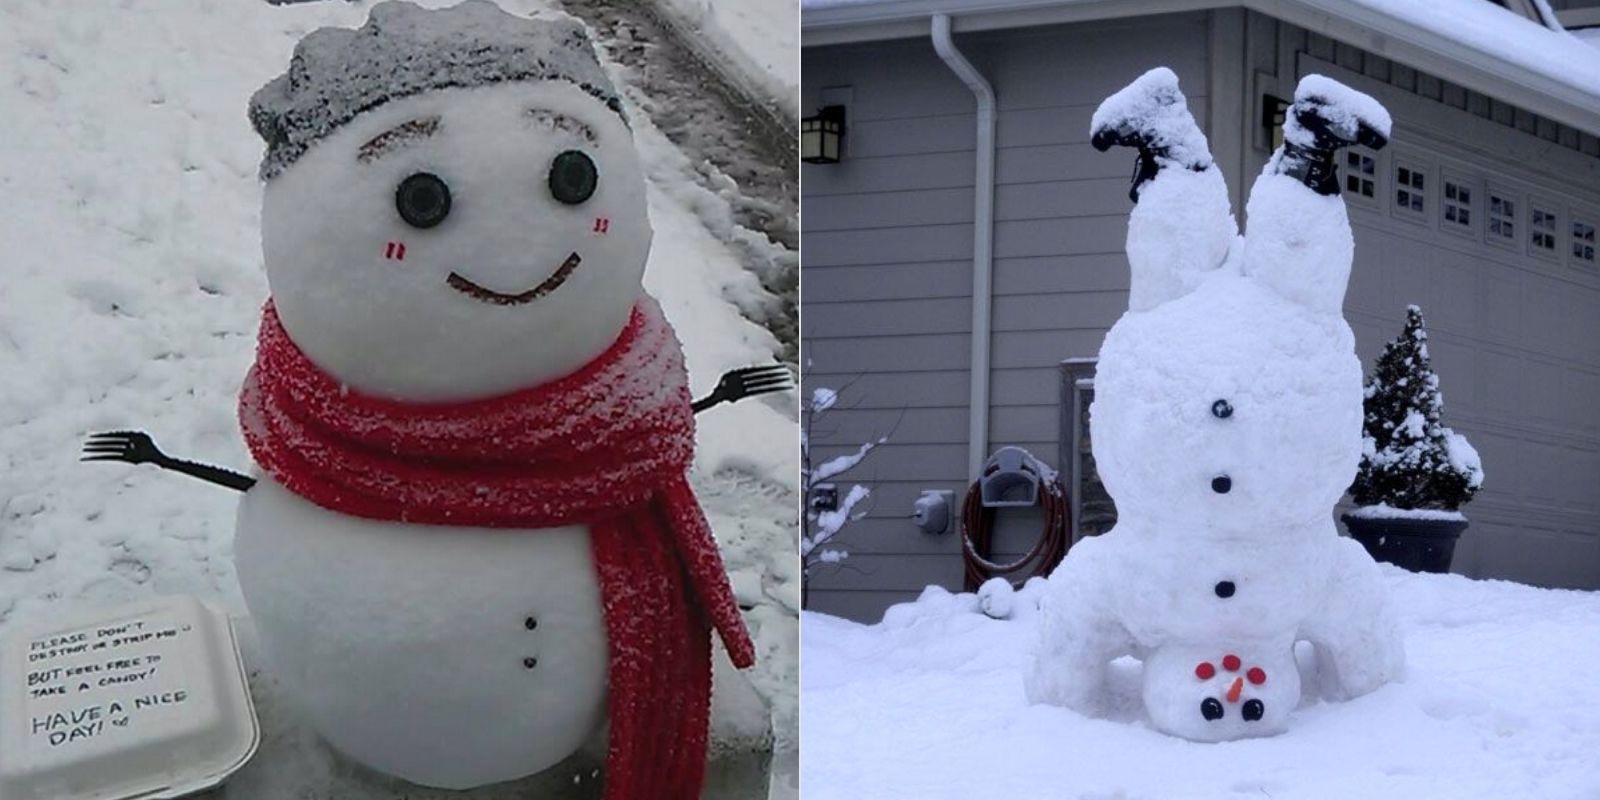 20 снежных фигур, которые легко сделать самому и с детьми domain, PinterestPublic, можно, сделать, снега, чтобы, голову, придётся, сверху, снежков, получится, снежные, деталей, затем, фигуры, просто, фигуру, земле, PinterestСлепите, водой